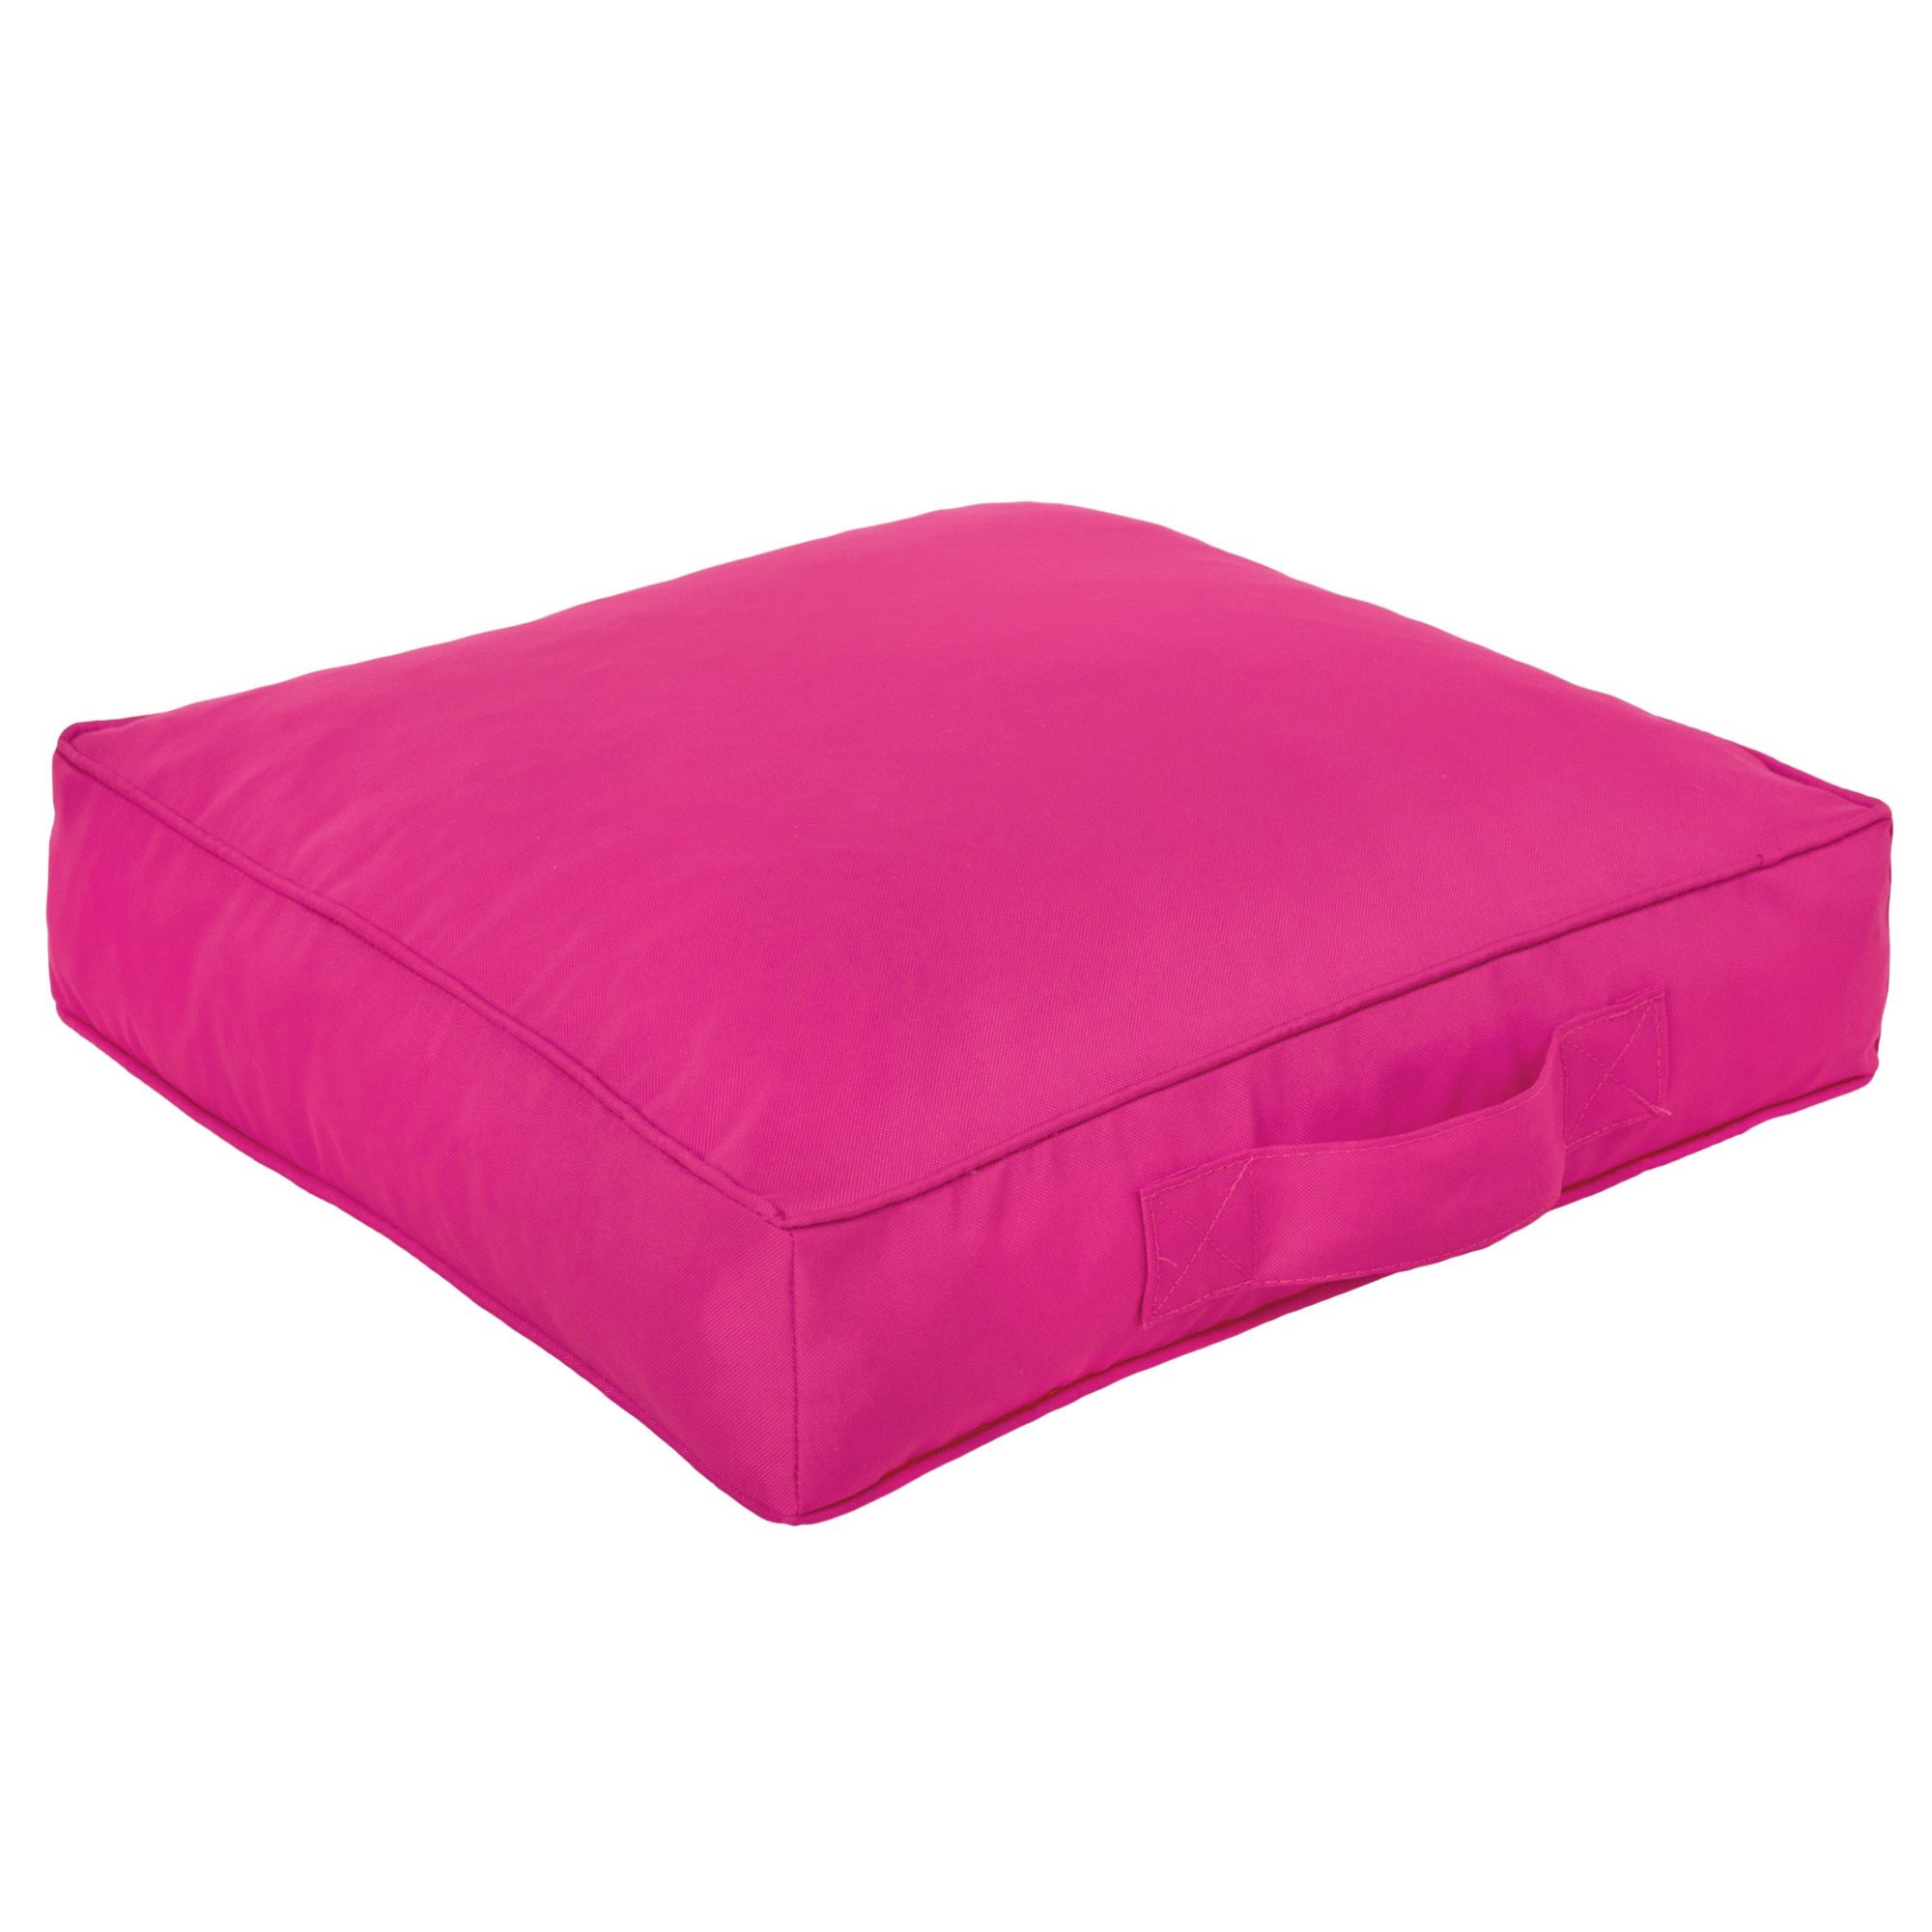 Štvorcový sedák ružový nylon